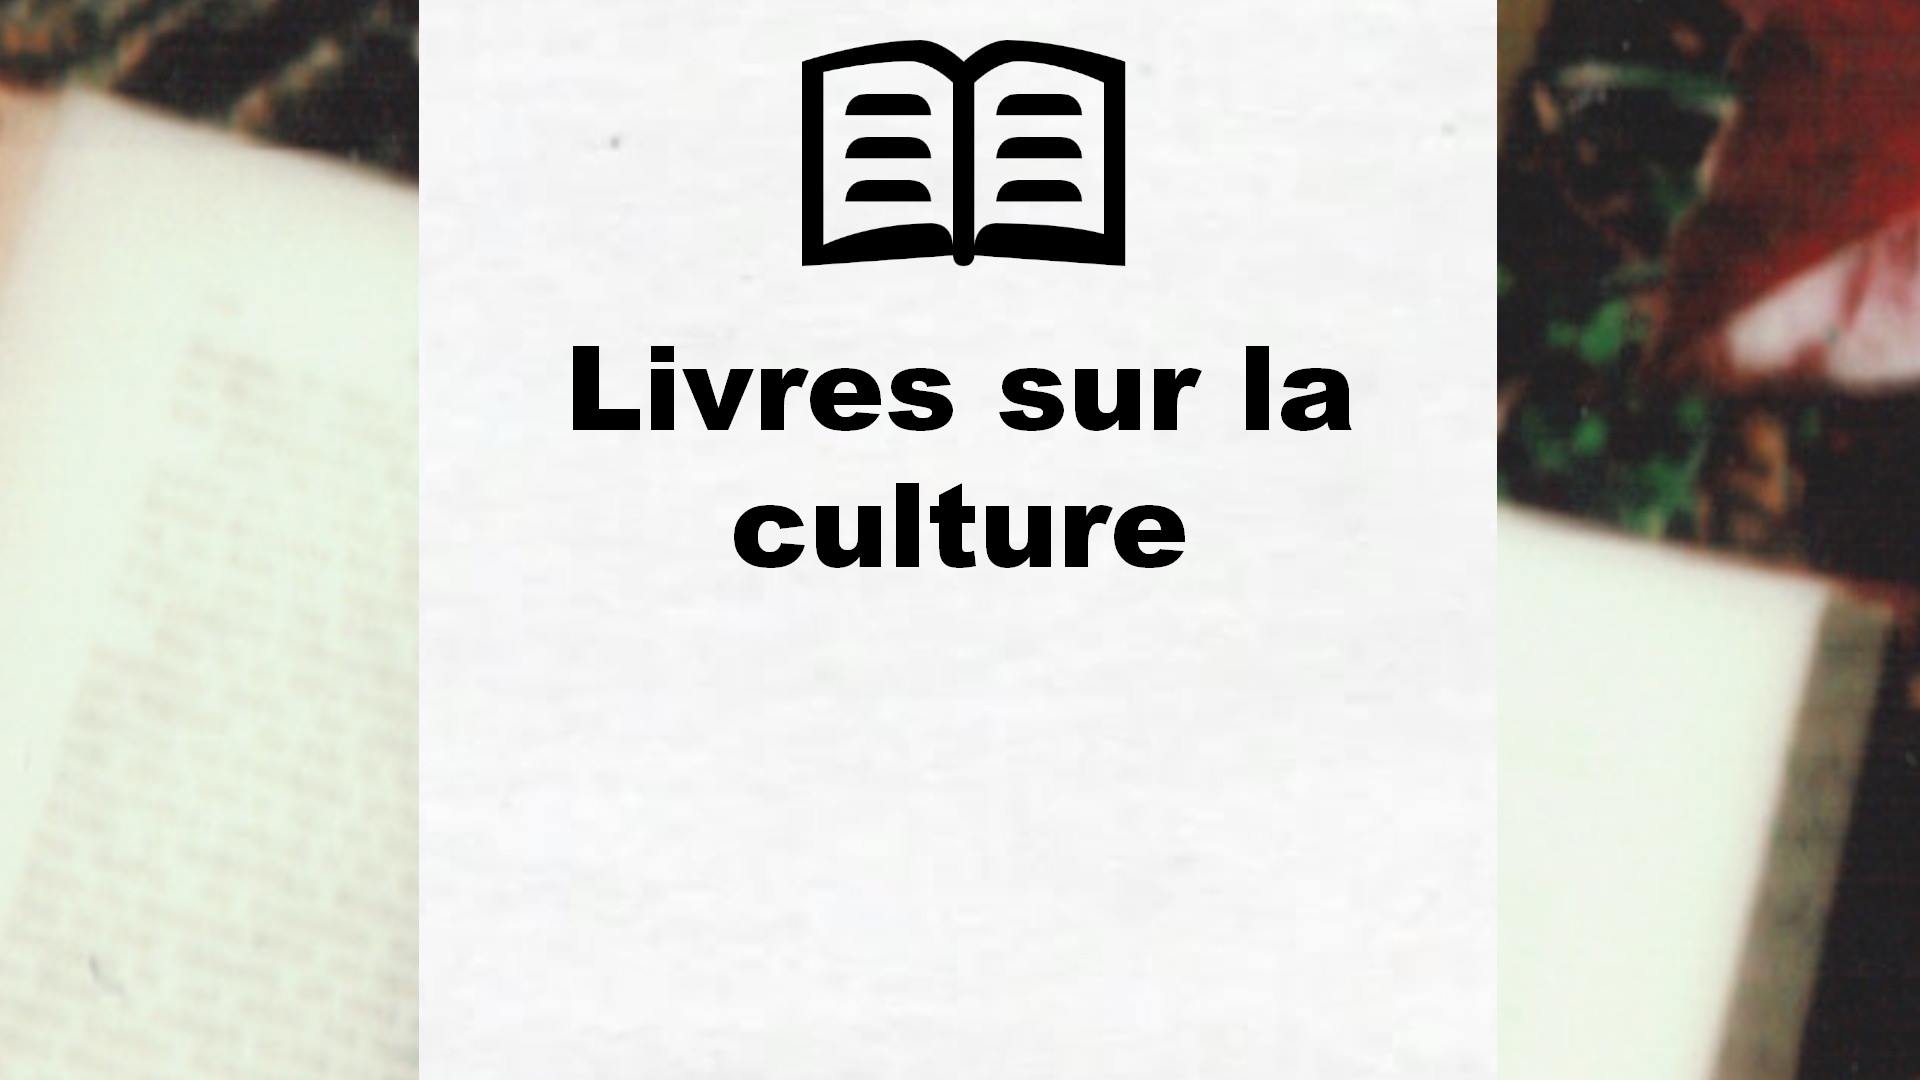 Livres sur la culture